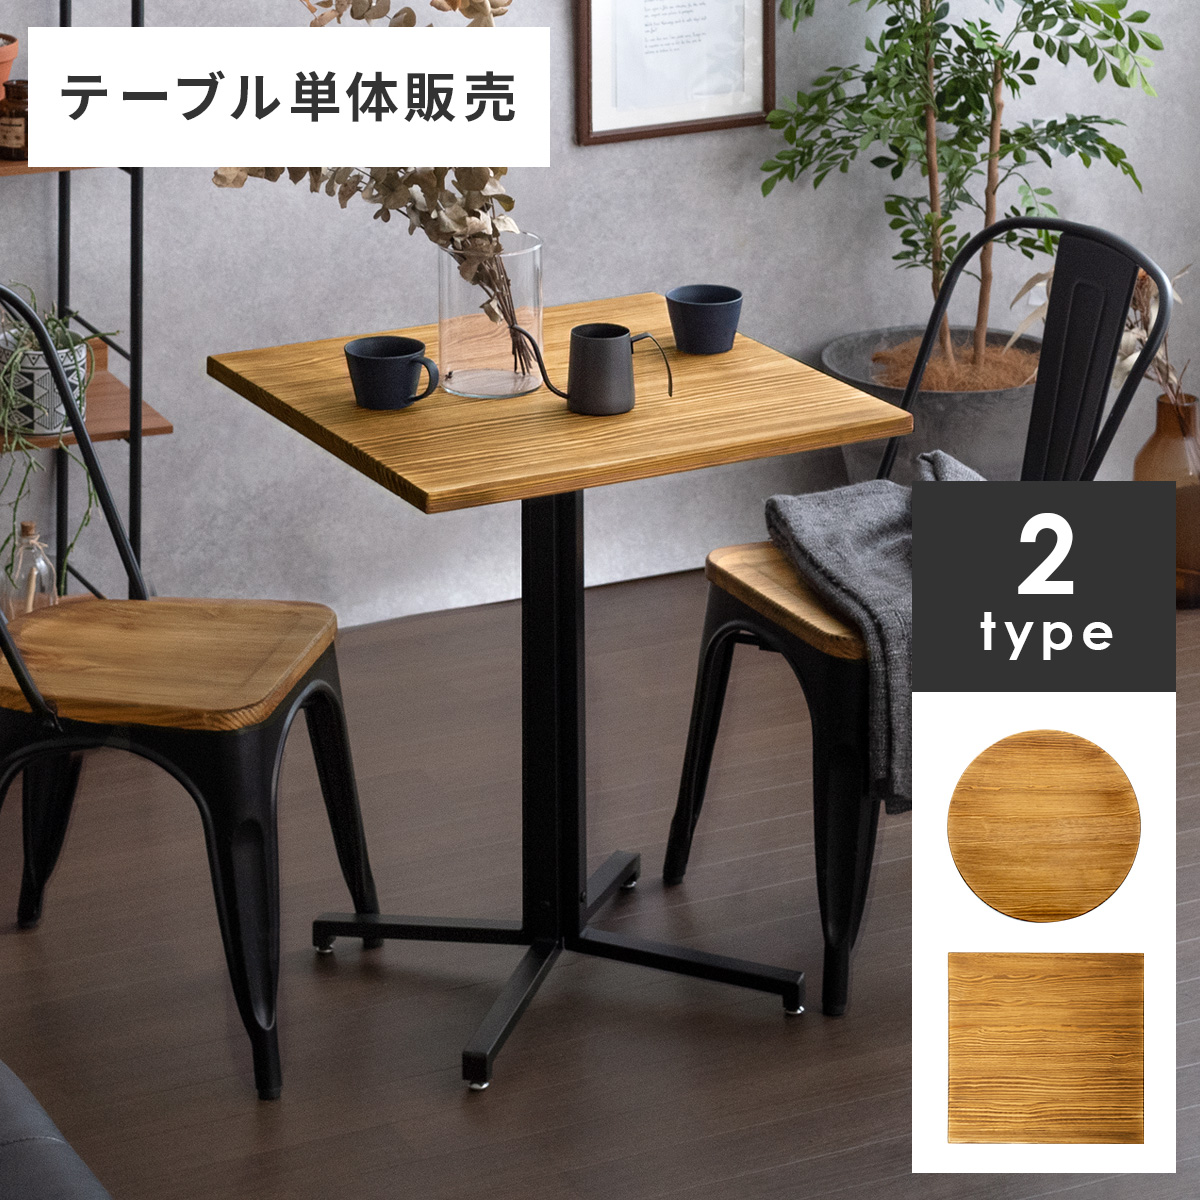 カフェテーブル コーヒーテーブル ダイニングテーブル カウンターテーブル おしゃれ 単品 2人用 バーテーブル ハイテーブル 食卓 テーブル  幅60cm 高さ75cm